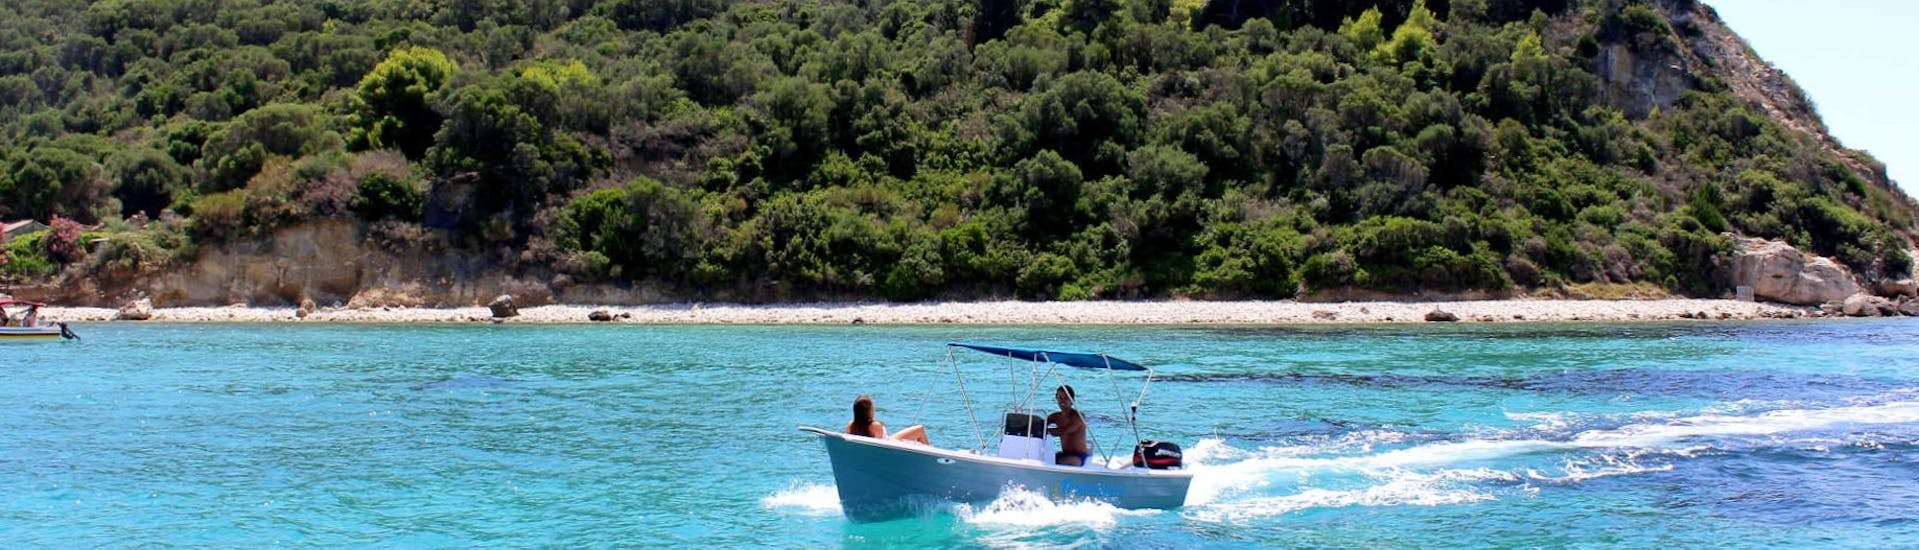 El barco que puede alquilarse en el alquiler de barco en Agios Sostis - Premium con Traventure Zakynthos está en la playa.